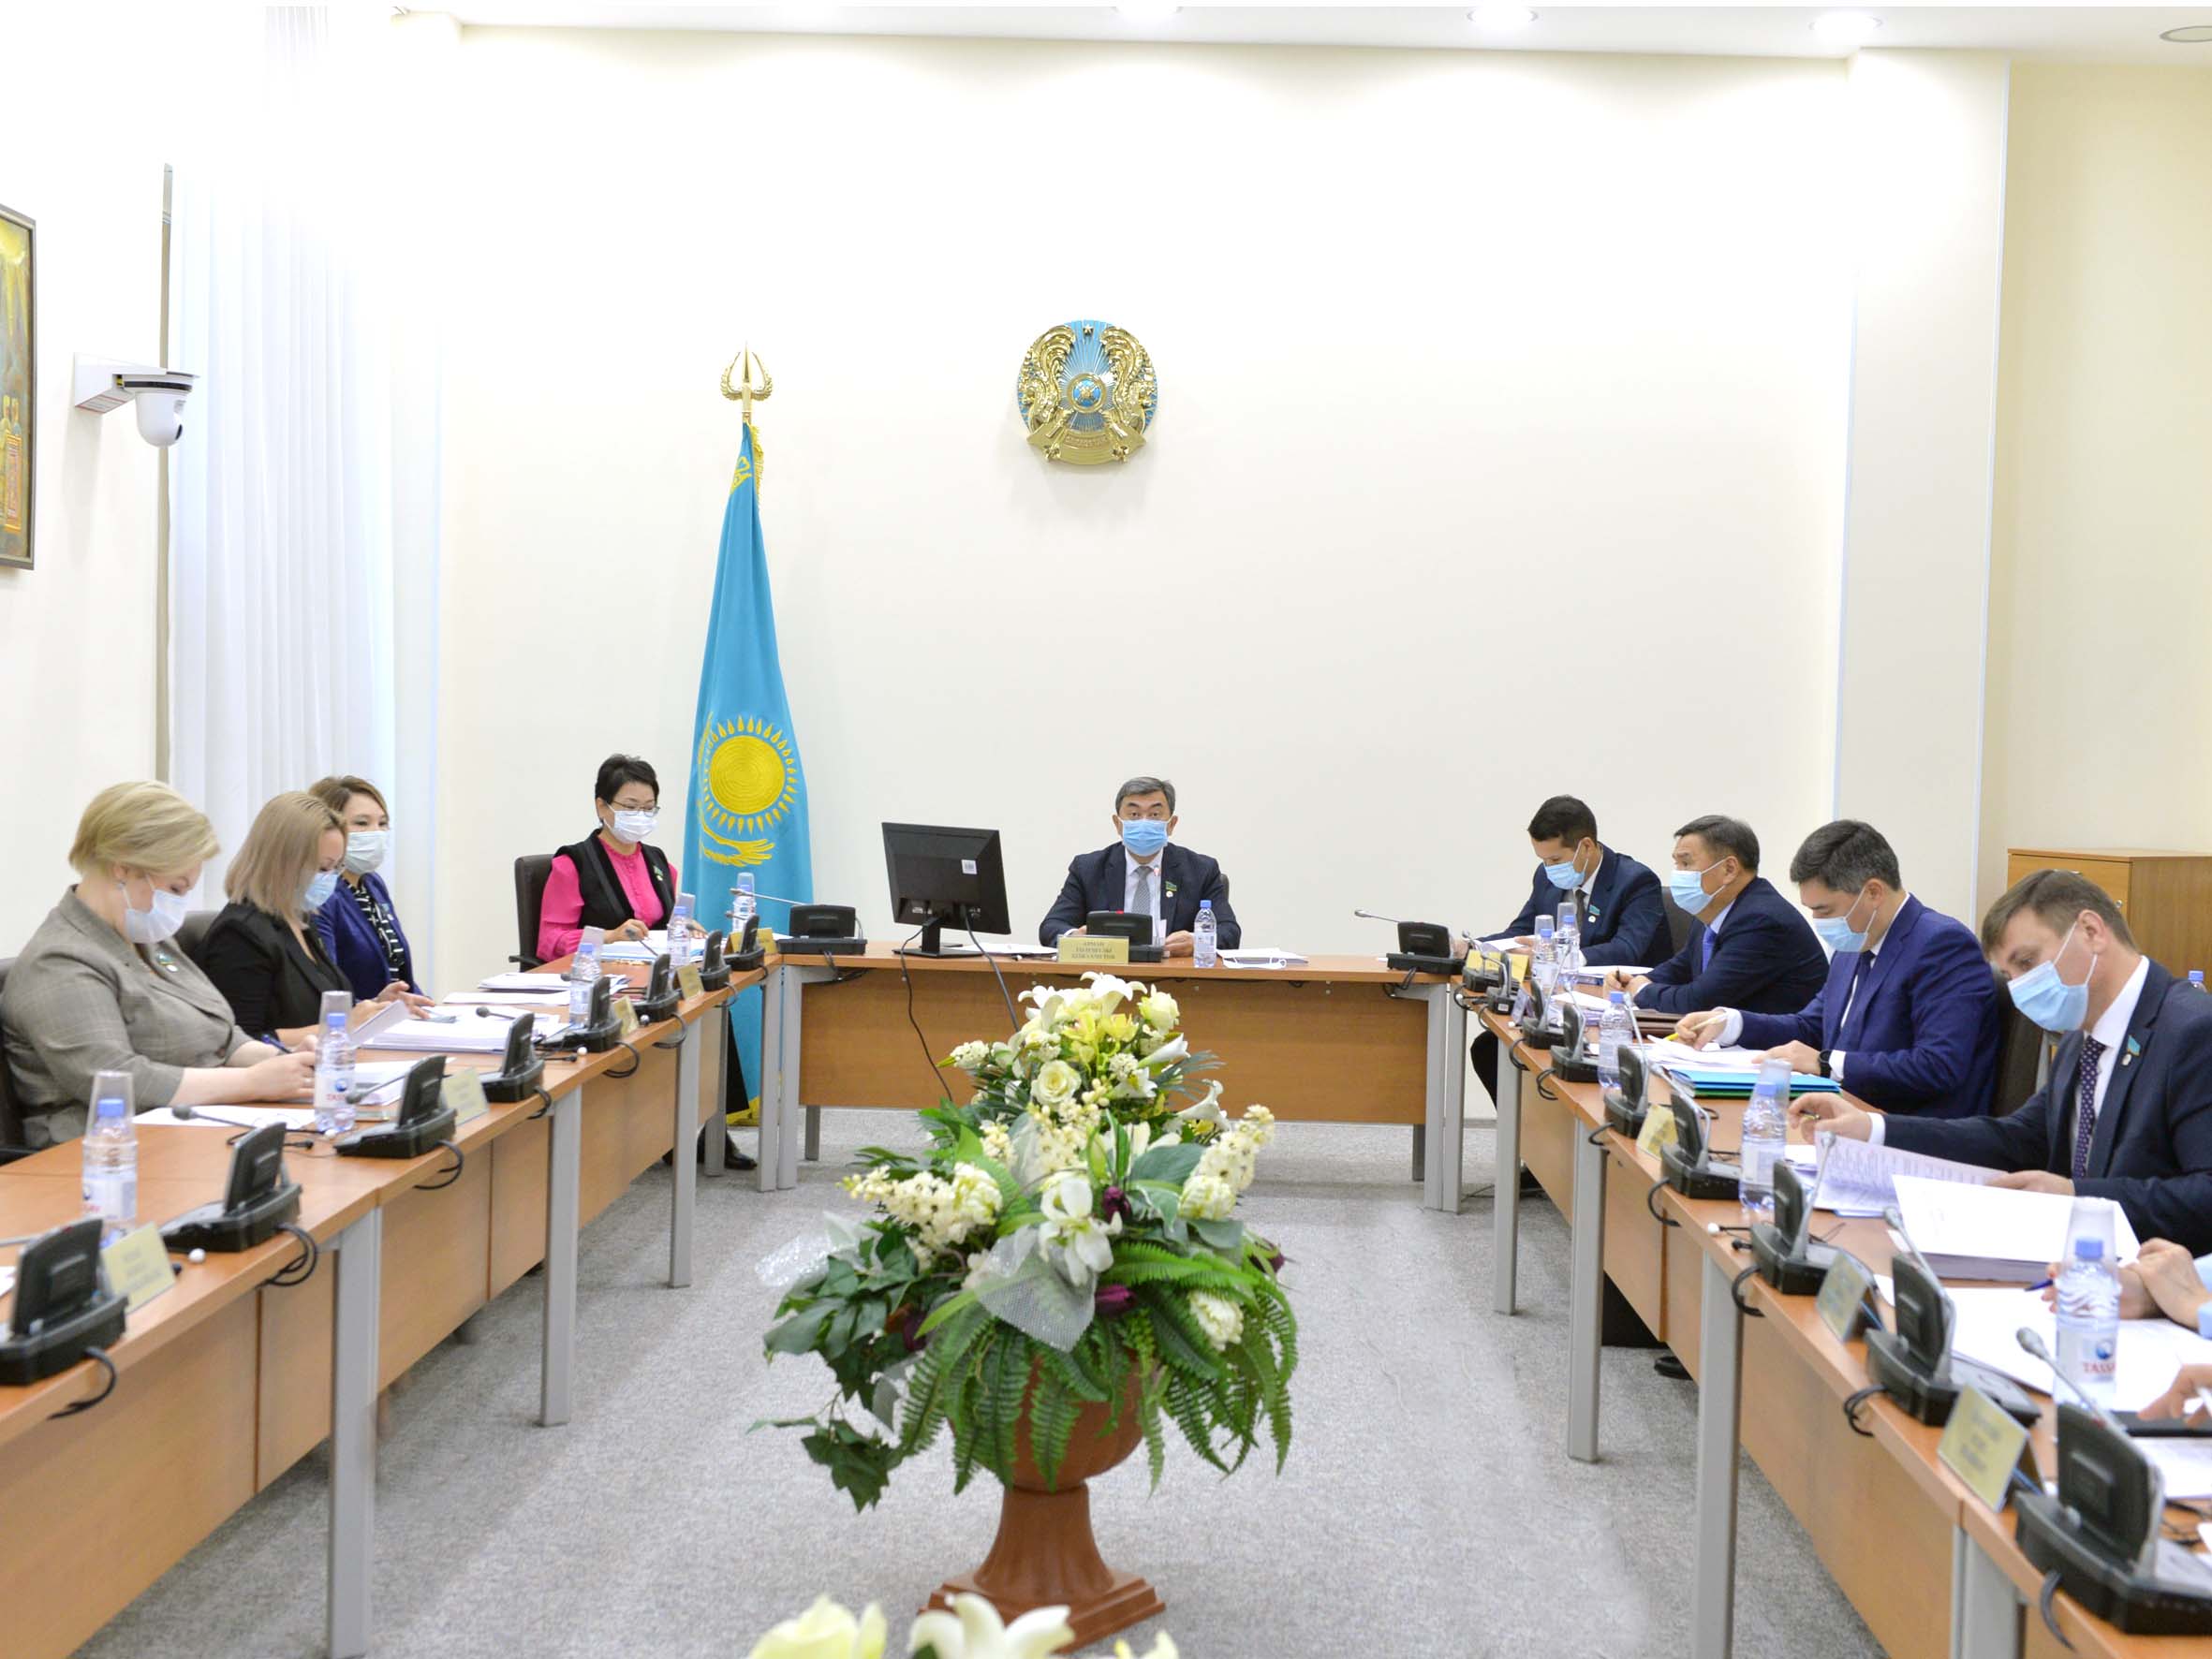 Заседание круглого стола по обсуждению законопроекта  «О внесении изменений и дополнений в некоторые законодательные акты Республики Казахстан по вопросам противодействия коррупции» 